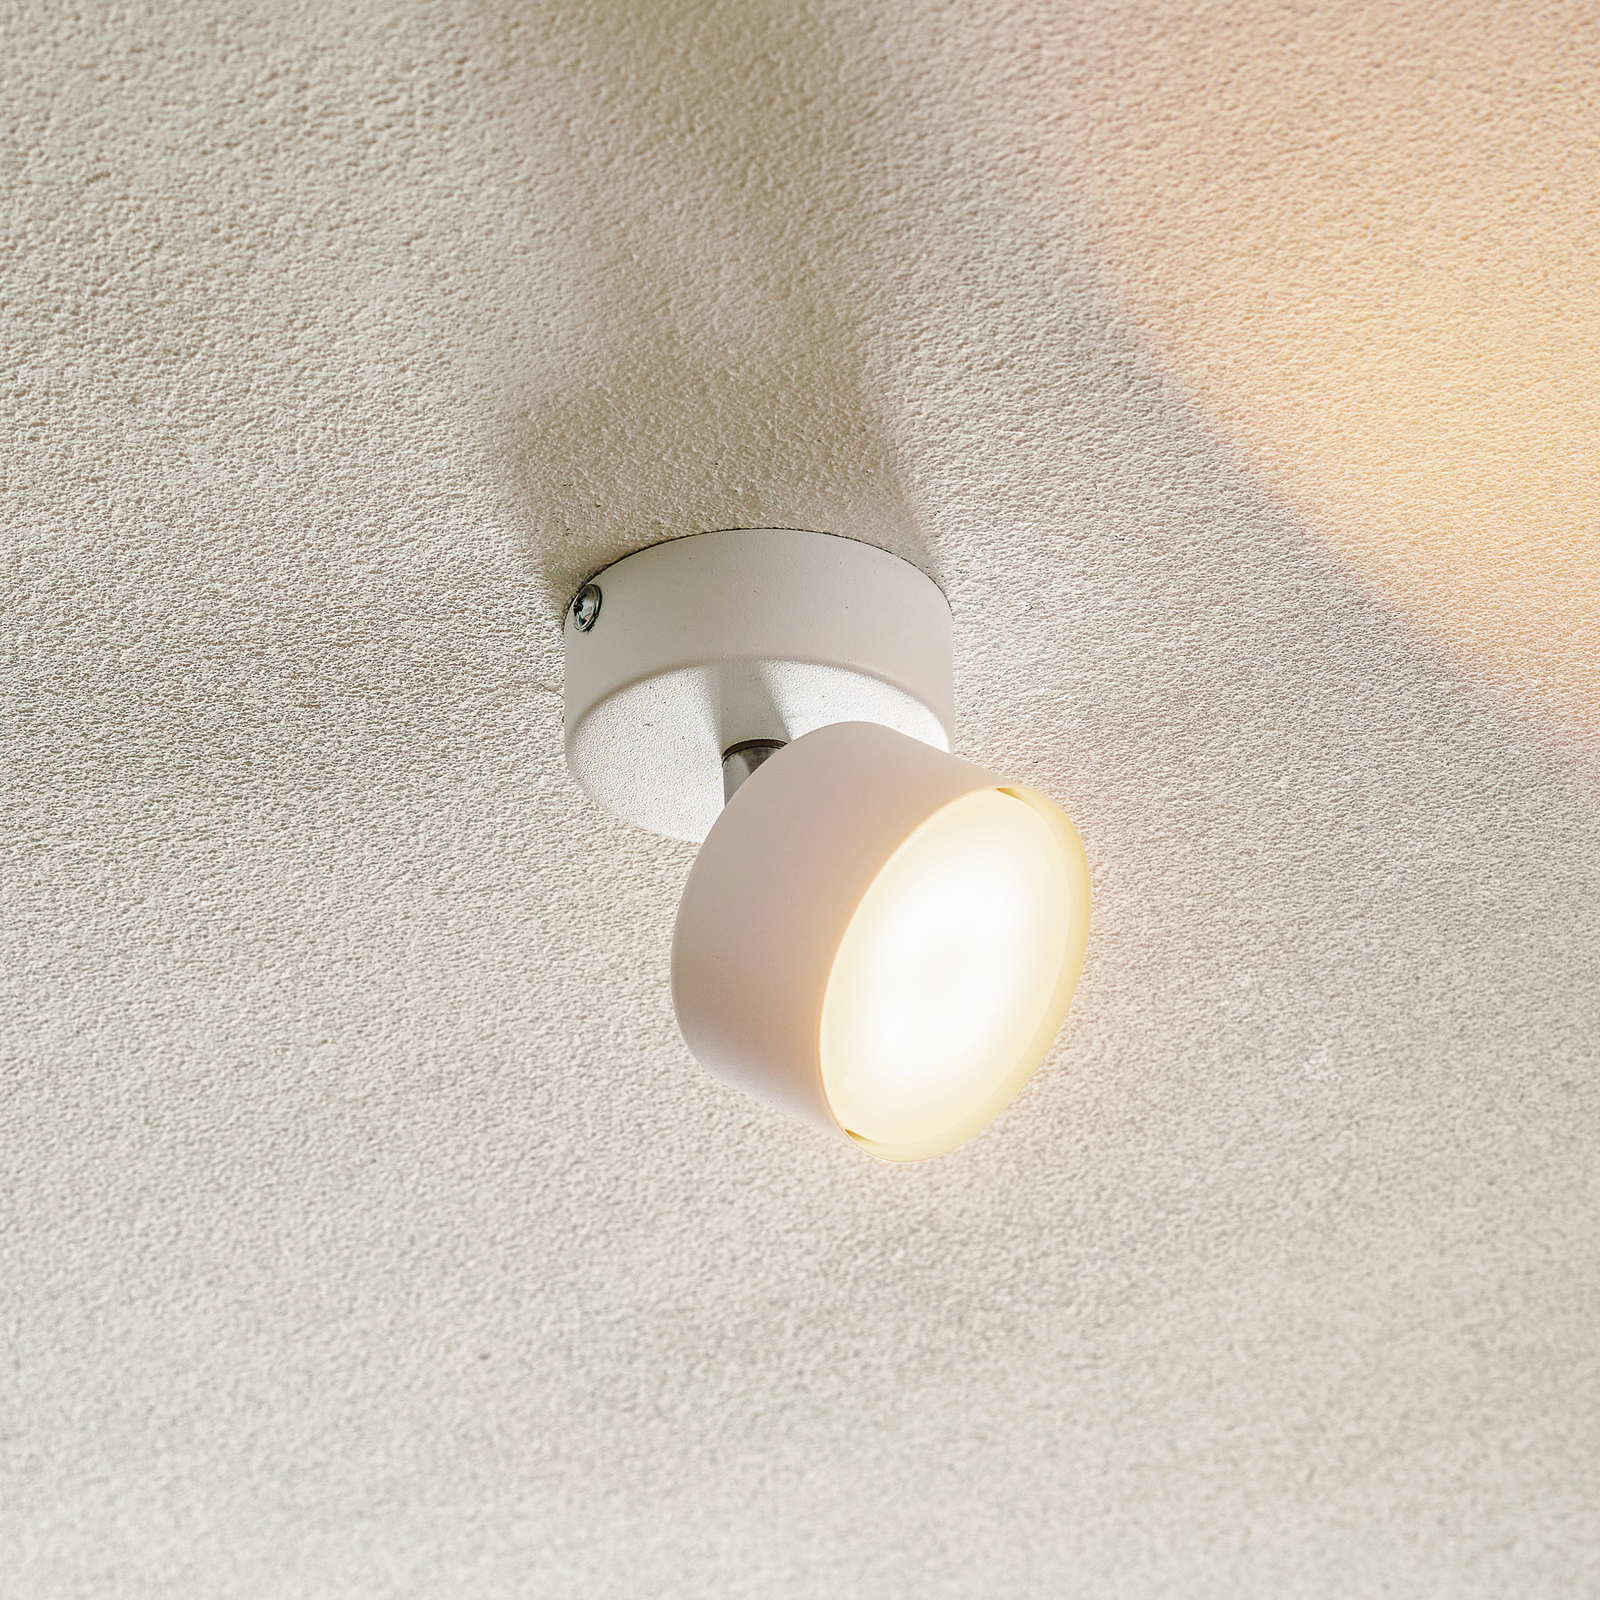 Clark ceiling spotlight, one-bulb, white